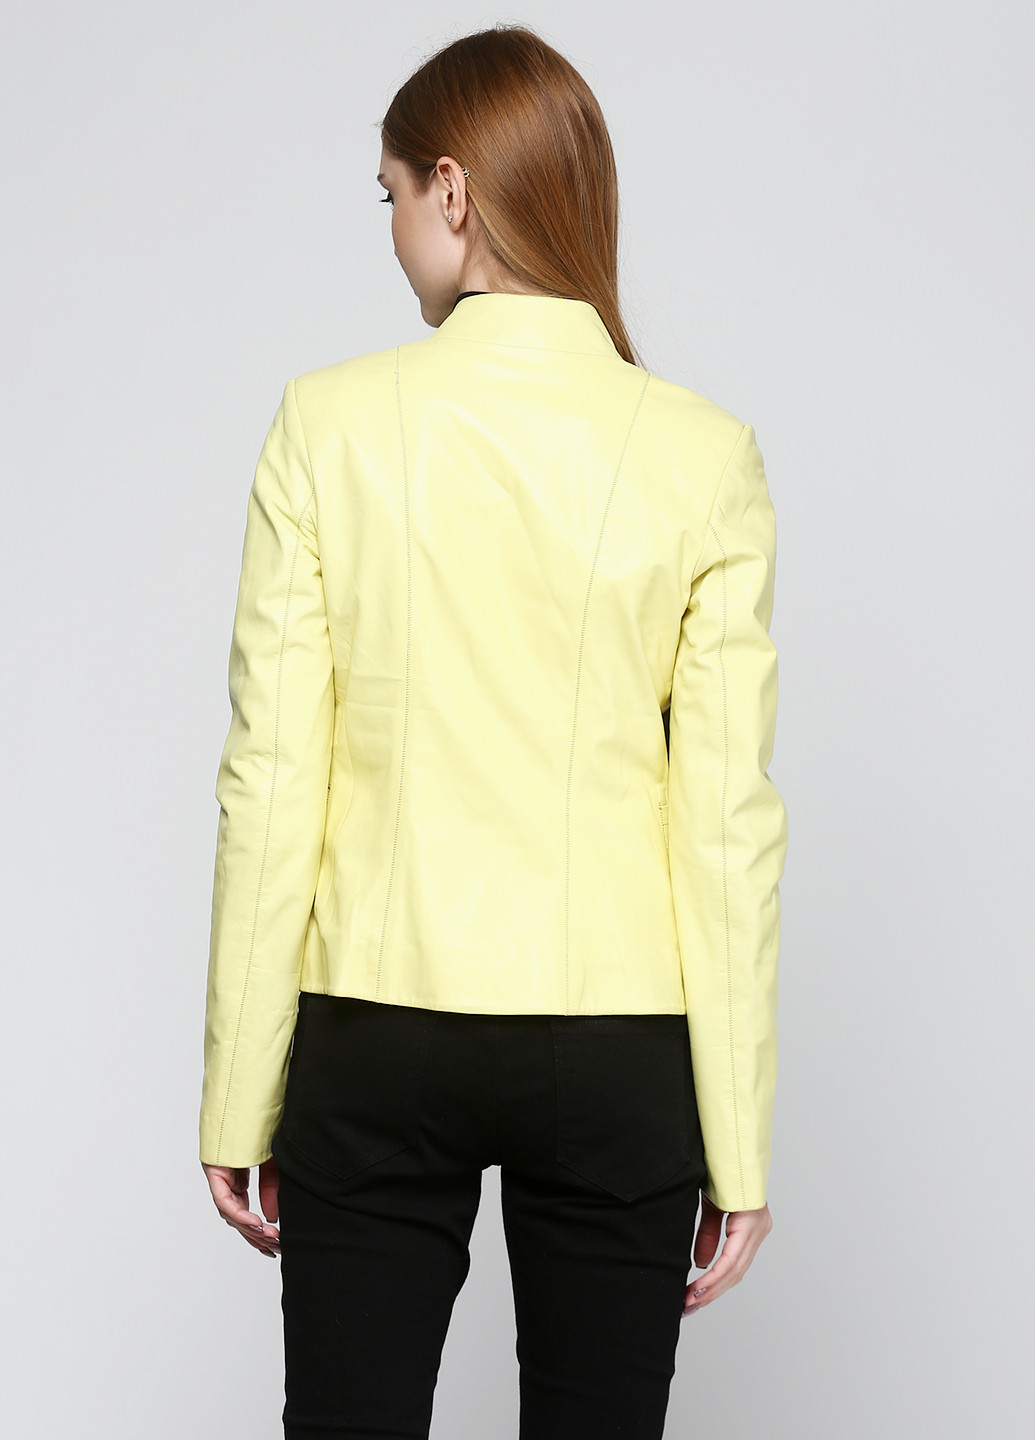 Жовта демісезонна куртка шкіряна Vicentini